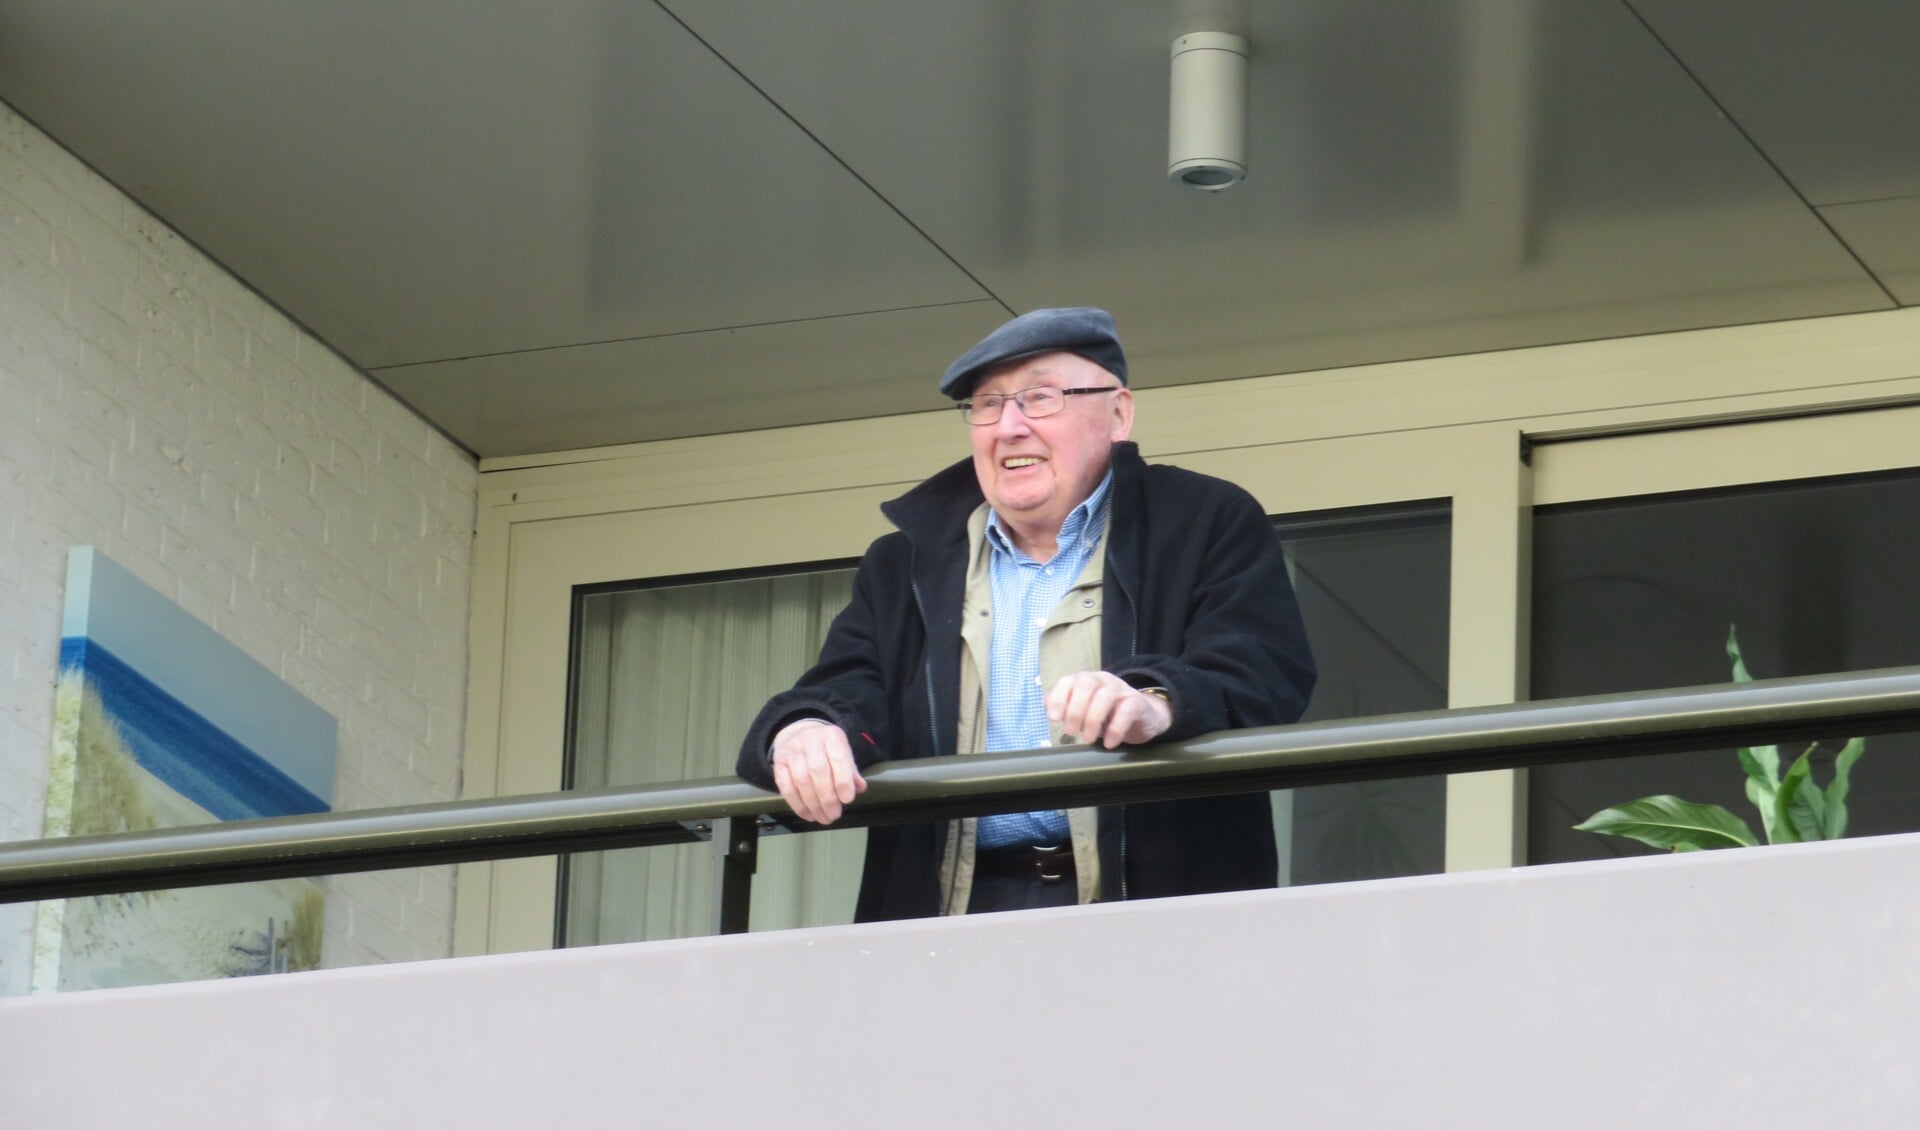 De jarige Sjef Senders op het balkon van zijn appartement